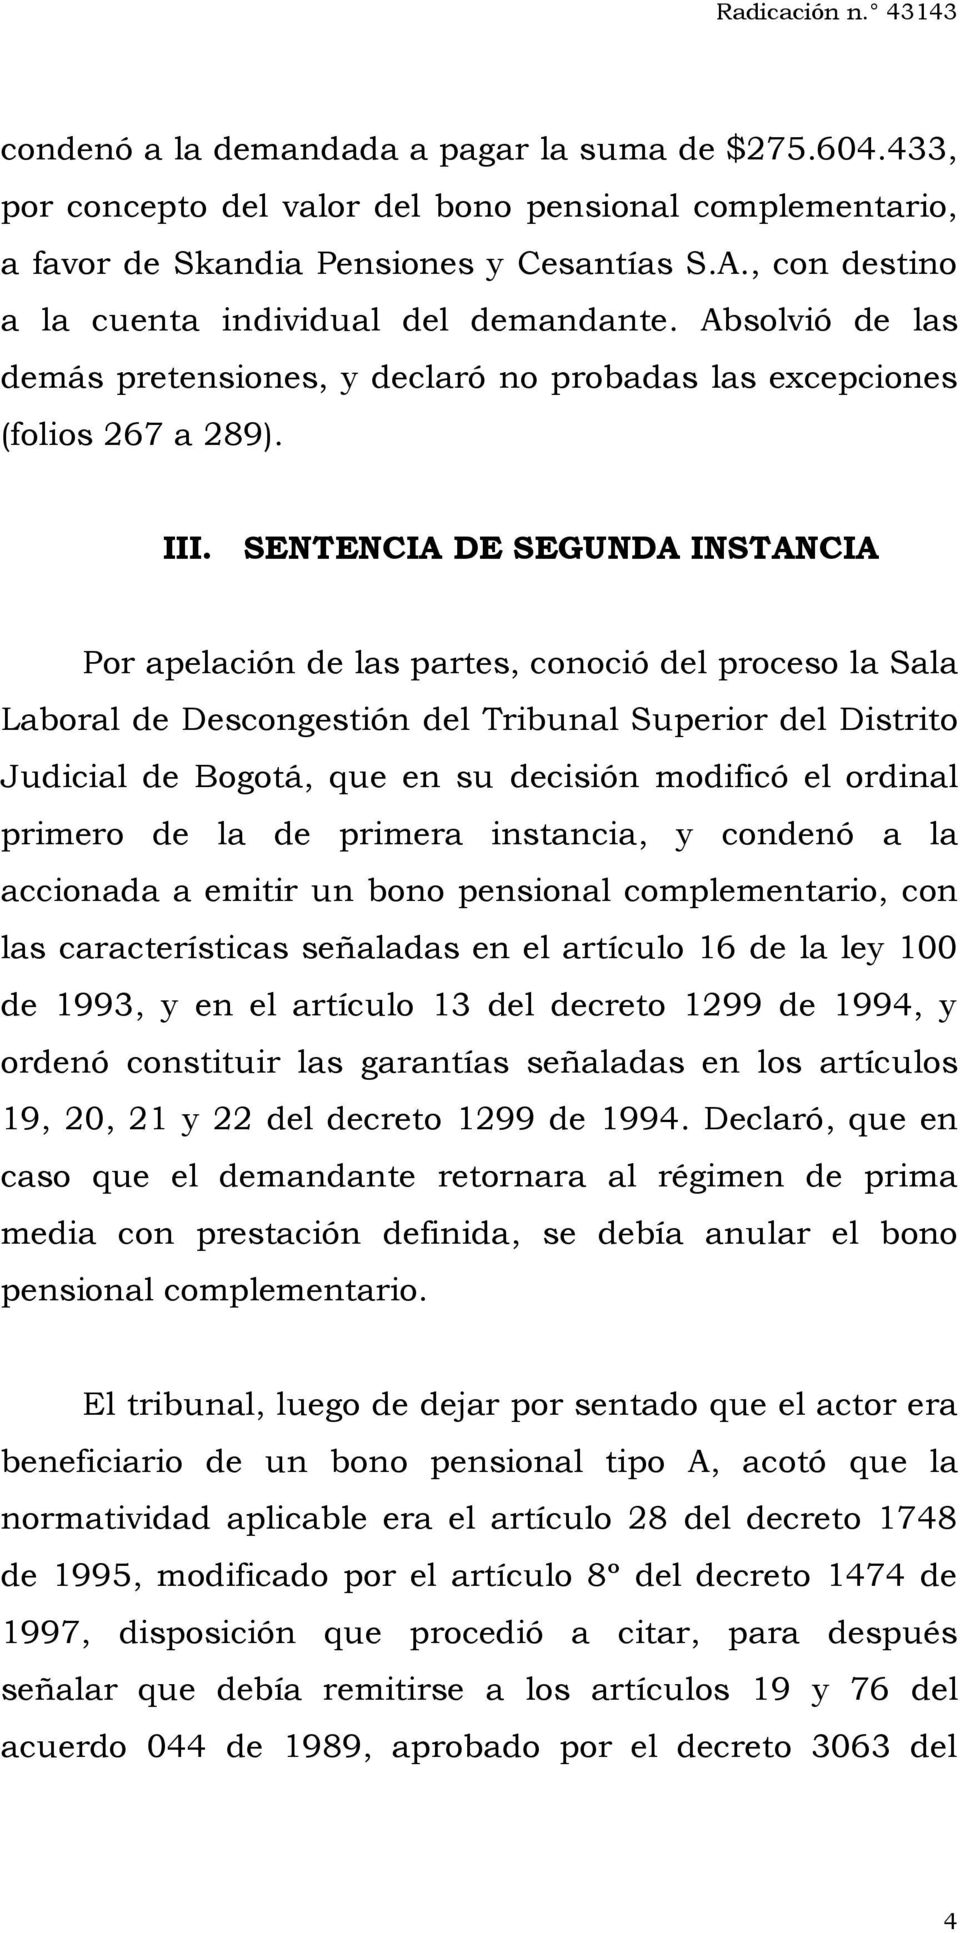 SENTENCIA DE SEGUNDA INSTANCIA Por apelación de las partes, conoció del proceso la Sala Laboral de Descongestión del Tribunal Superior del Distrito Judicial de Bogotá, que en su decisión modificó el